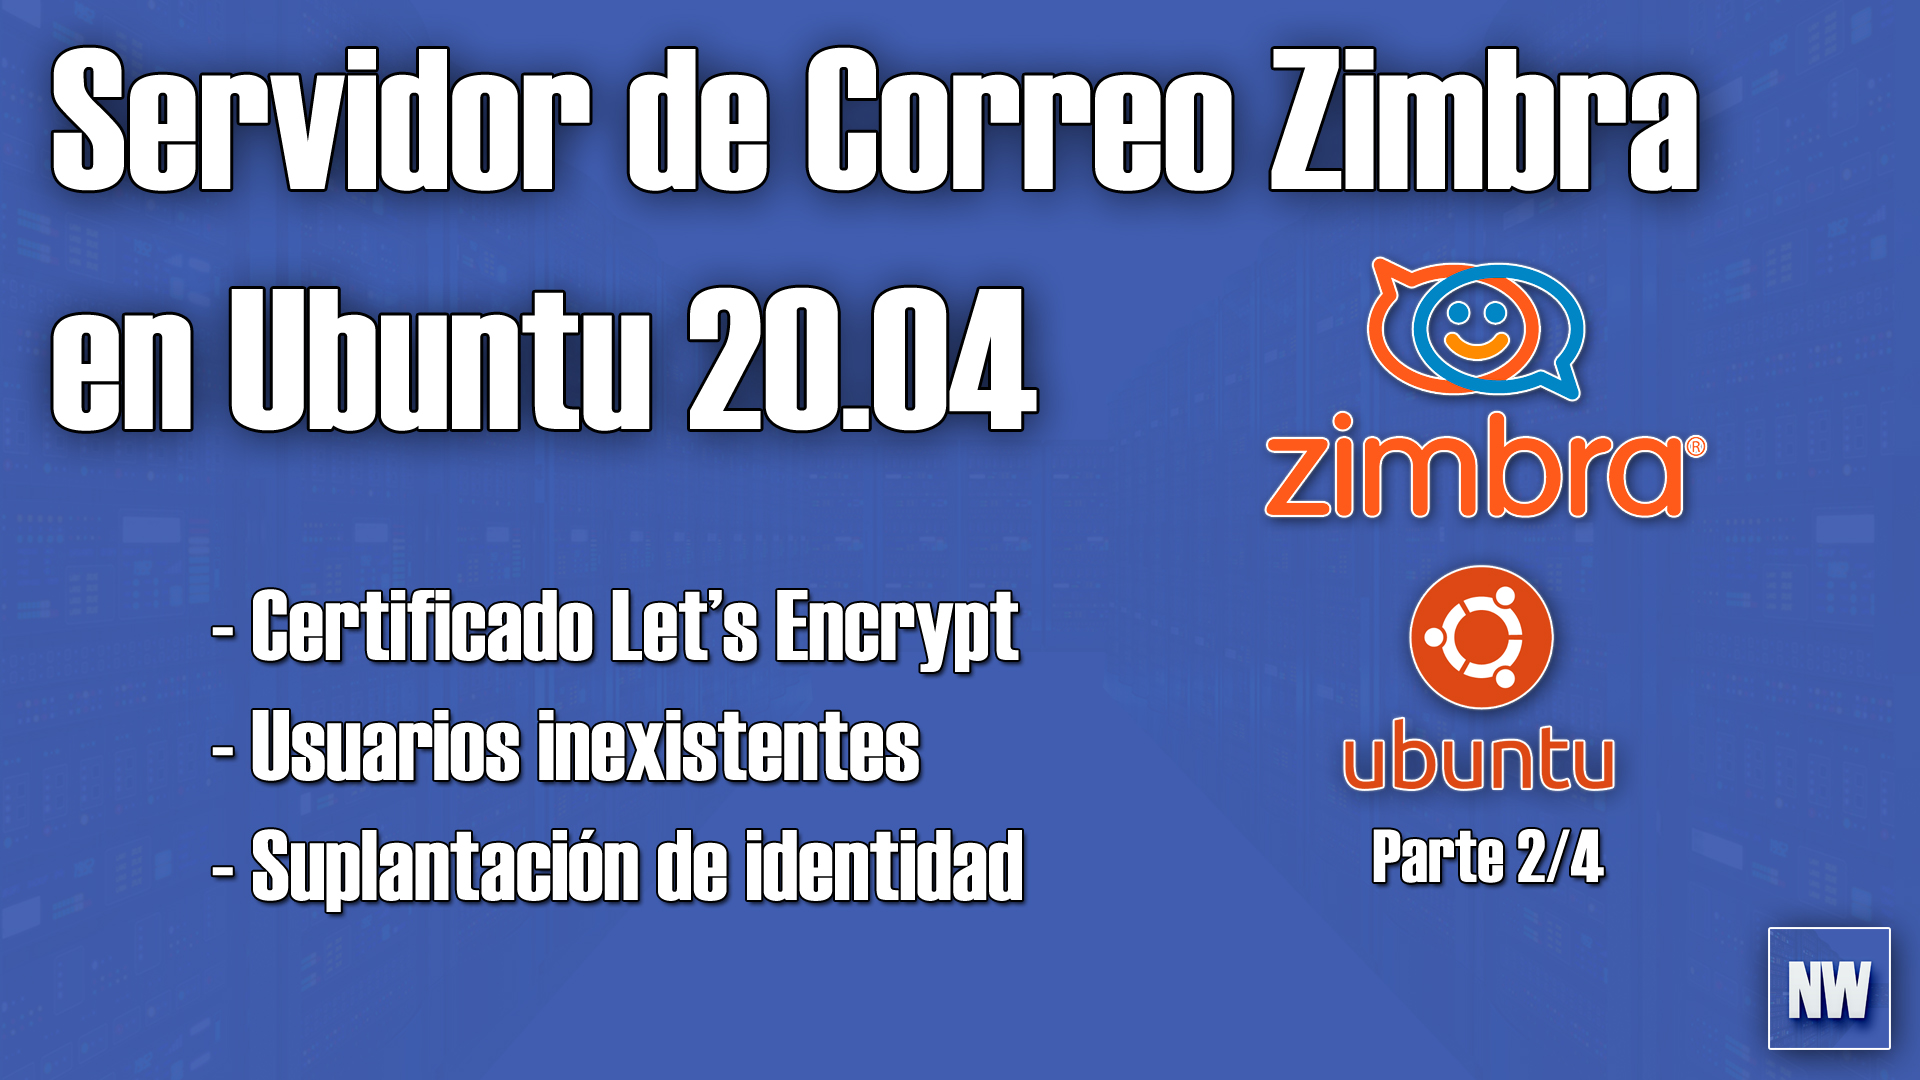 Servidor de correo Zimbra 8.8.15 en Ubuntu 20.04 dominio real, certificado, protección y reputación de nuestro servidor + listas de correo. Parte 2/4